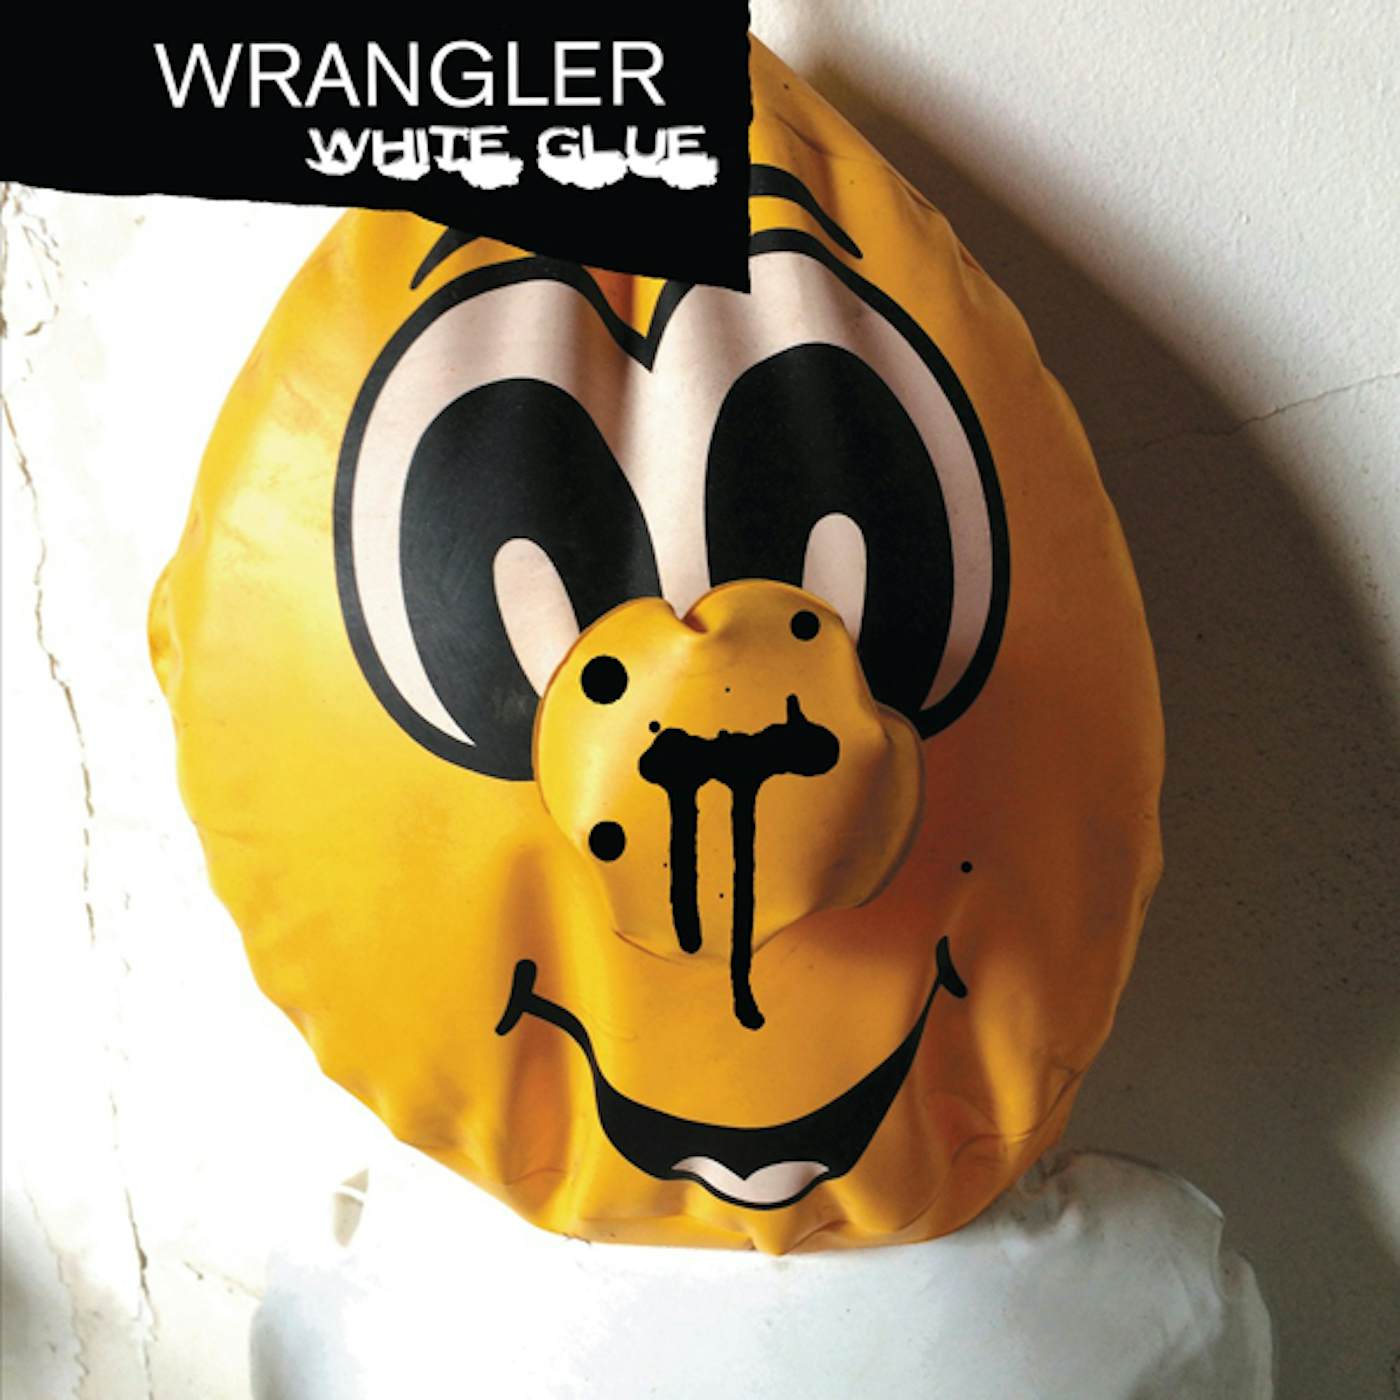 Wrangler White Glue Vinyl Record